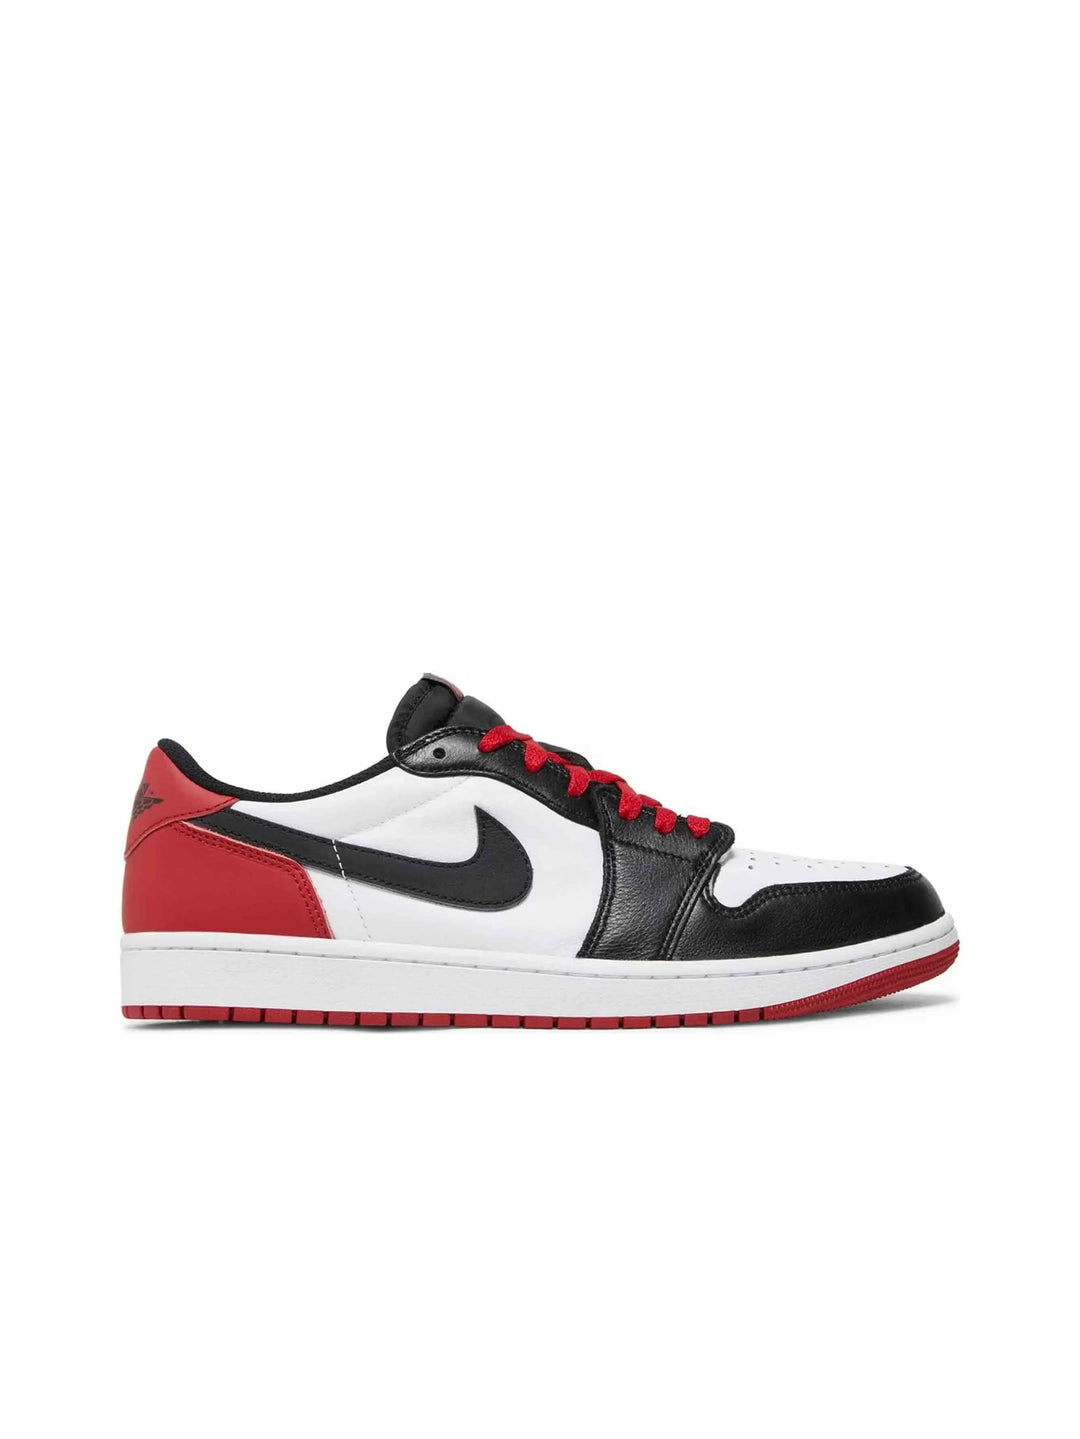 Nike Air Jordan 1 Retro Low OG Black Toe (2023) Prior